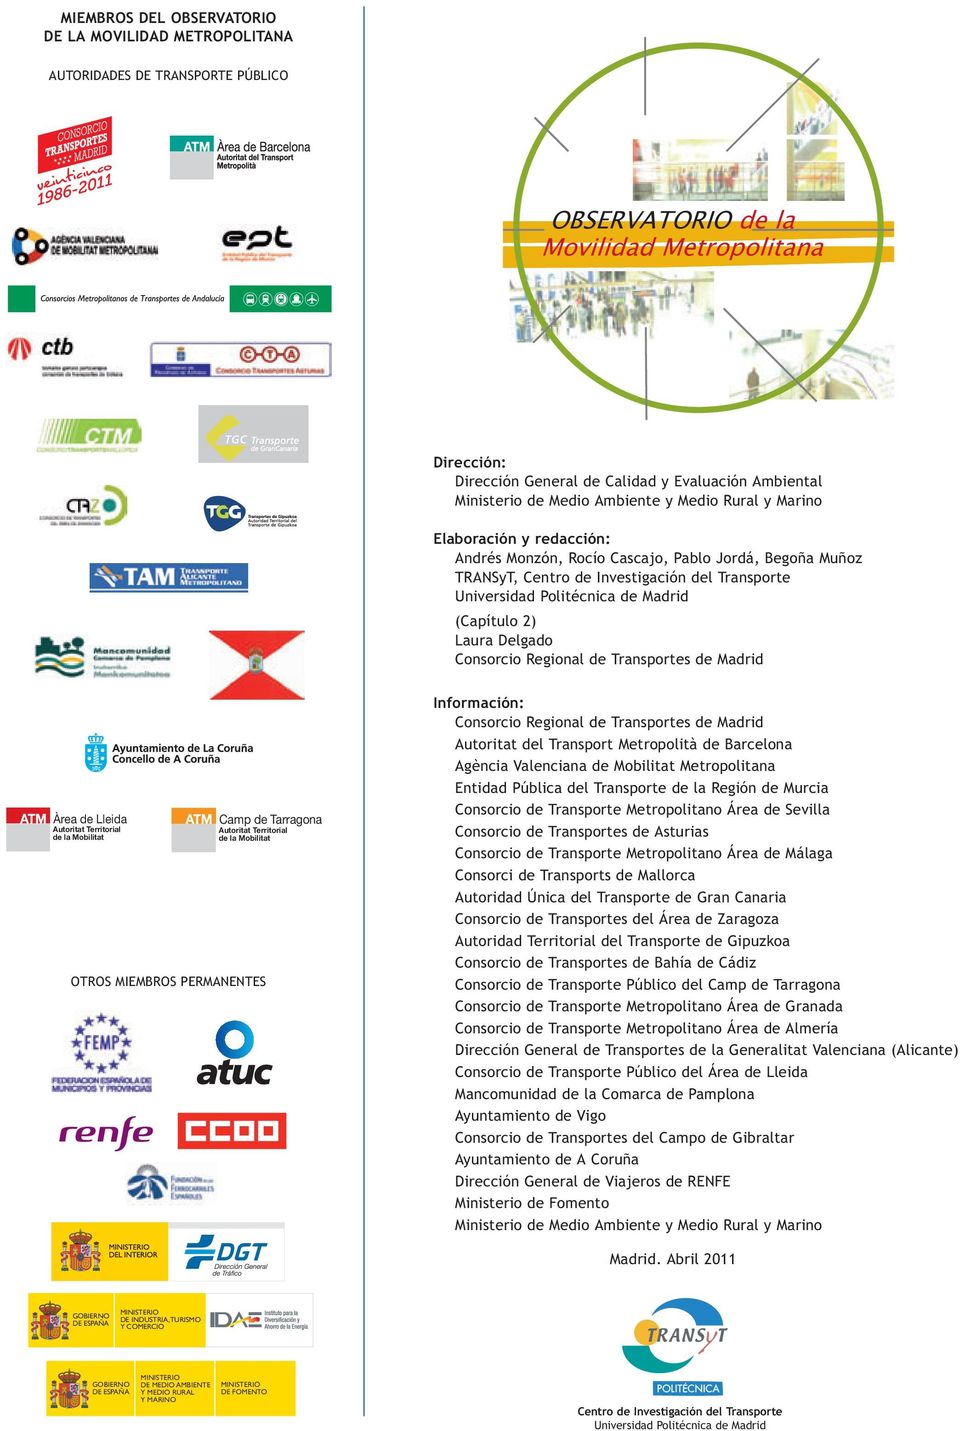 Politécnica de Madrid (Capítulo 2) Laura Delgado Consorcio Regional de Transportes de Madrid Àrea de Lleida Autoritat Territorial de la Mobilitat OTROS MIEMBROS PERMANENTES Camp de Tarragona